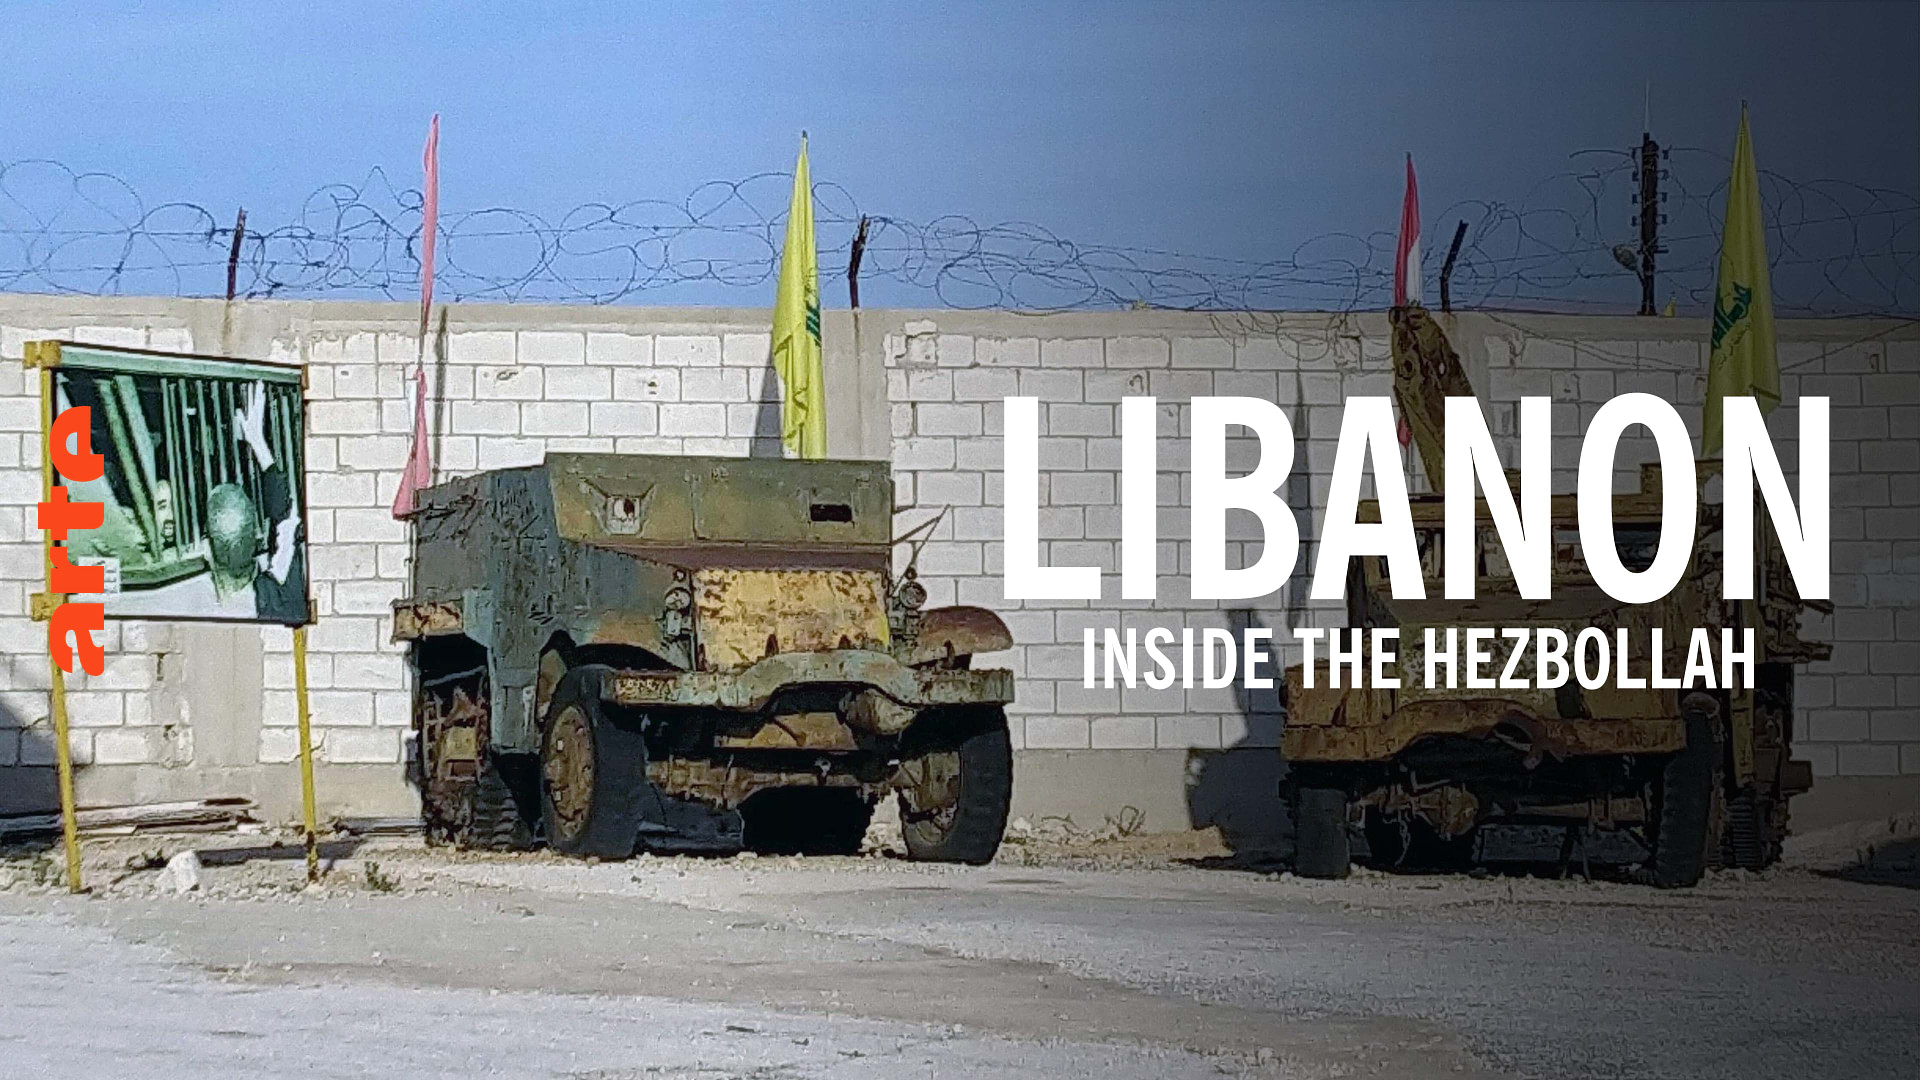 Libanon: Inside the Hezbollah